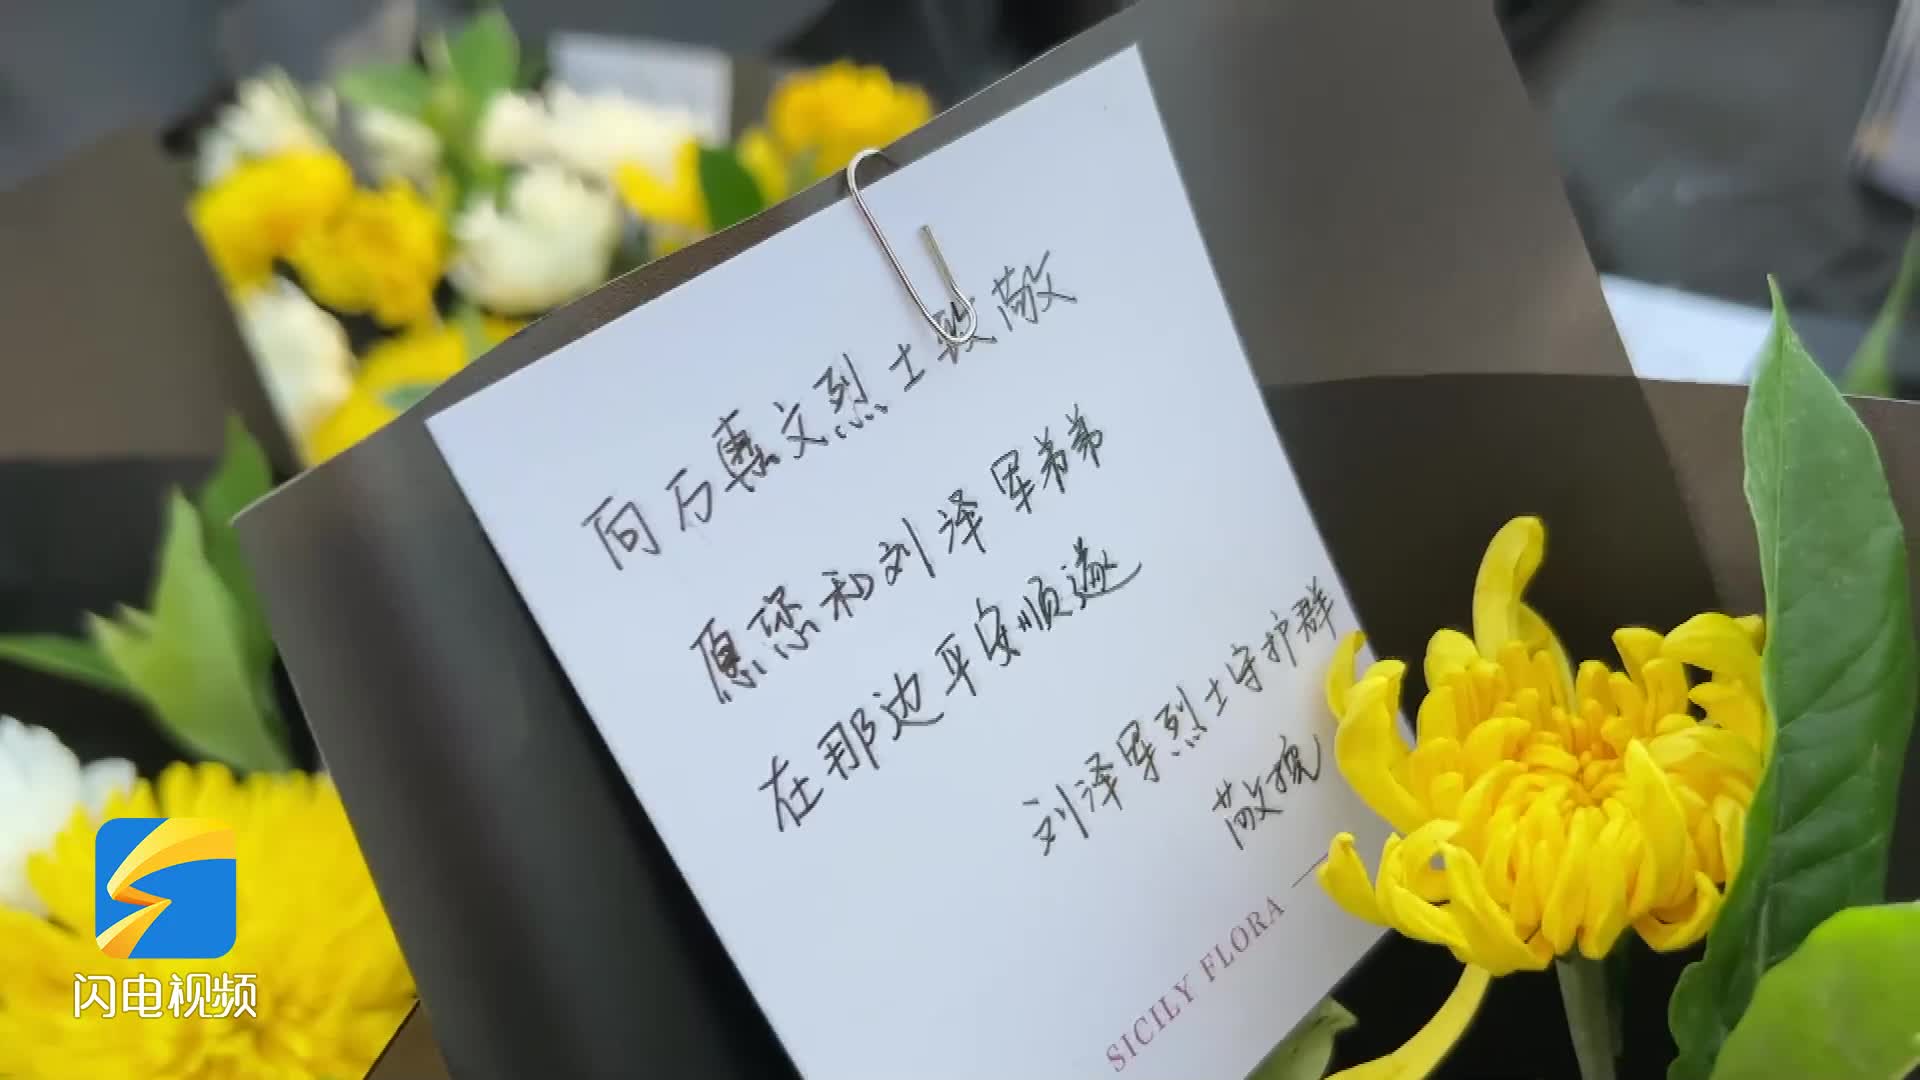 烈士家属、各地网友赶到烈士陵园为万惠文献上鲜花：“山记得你 海记得你”